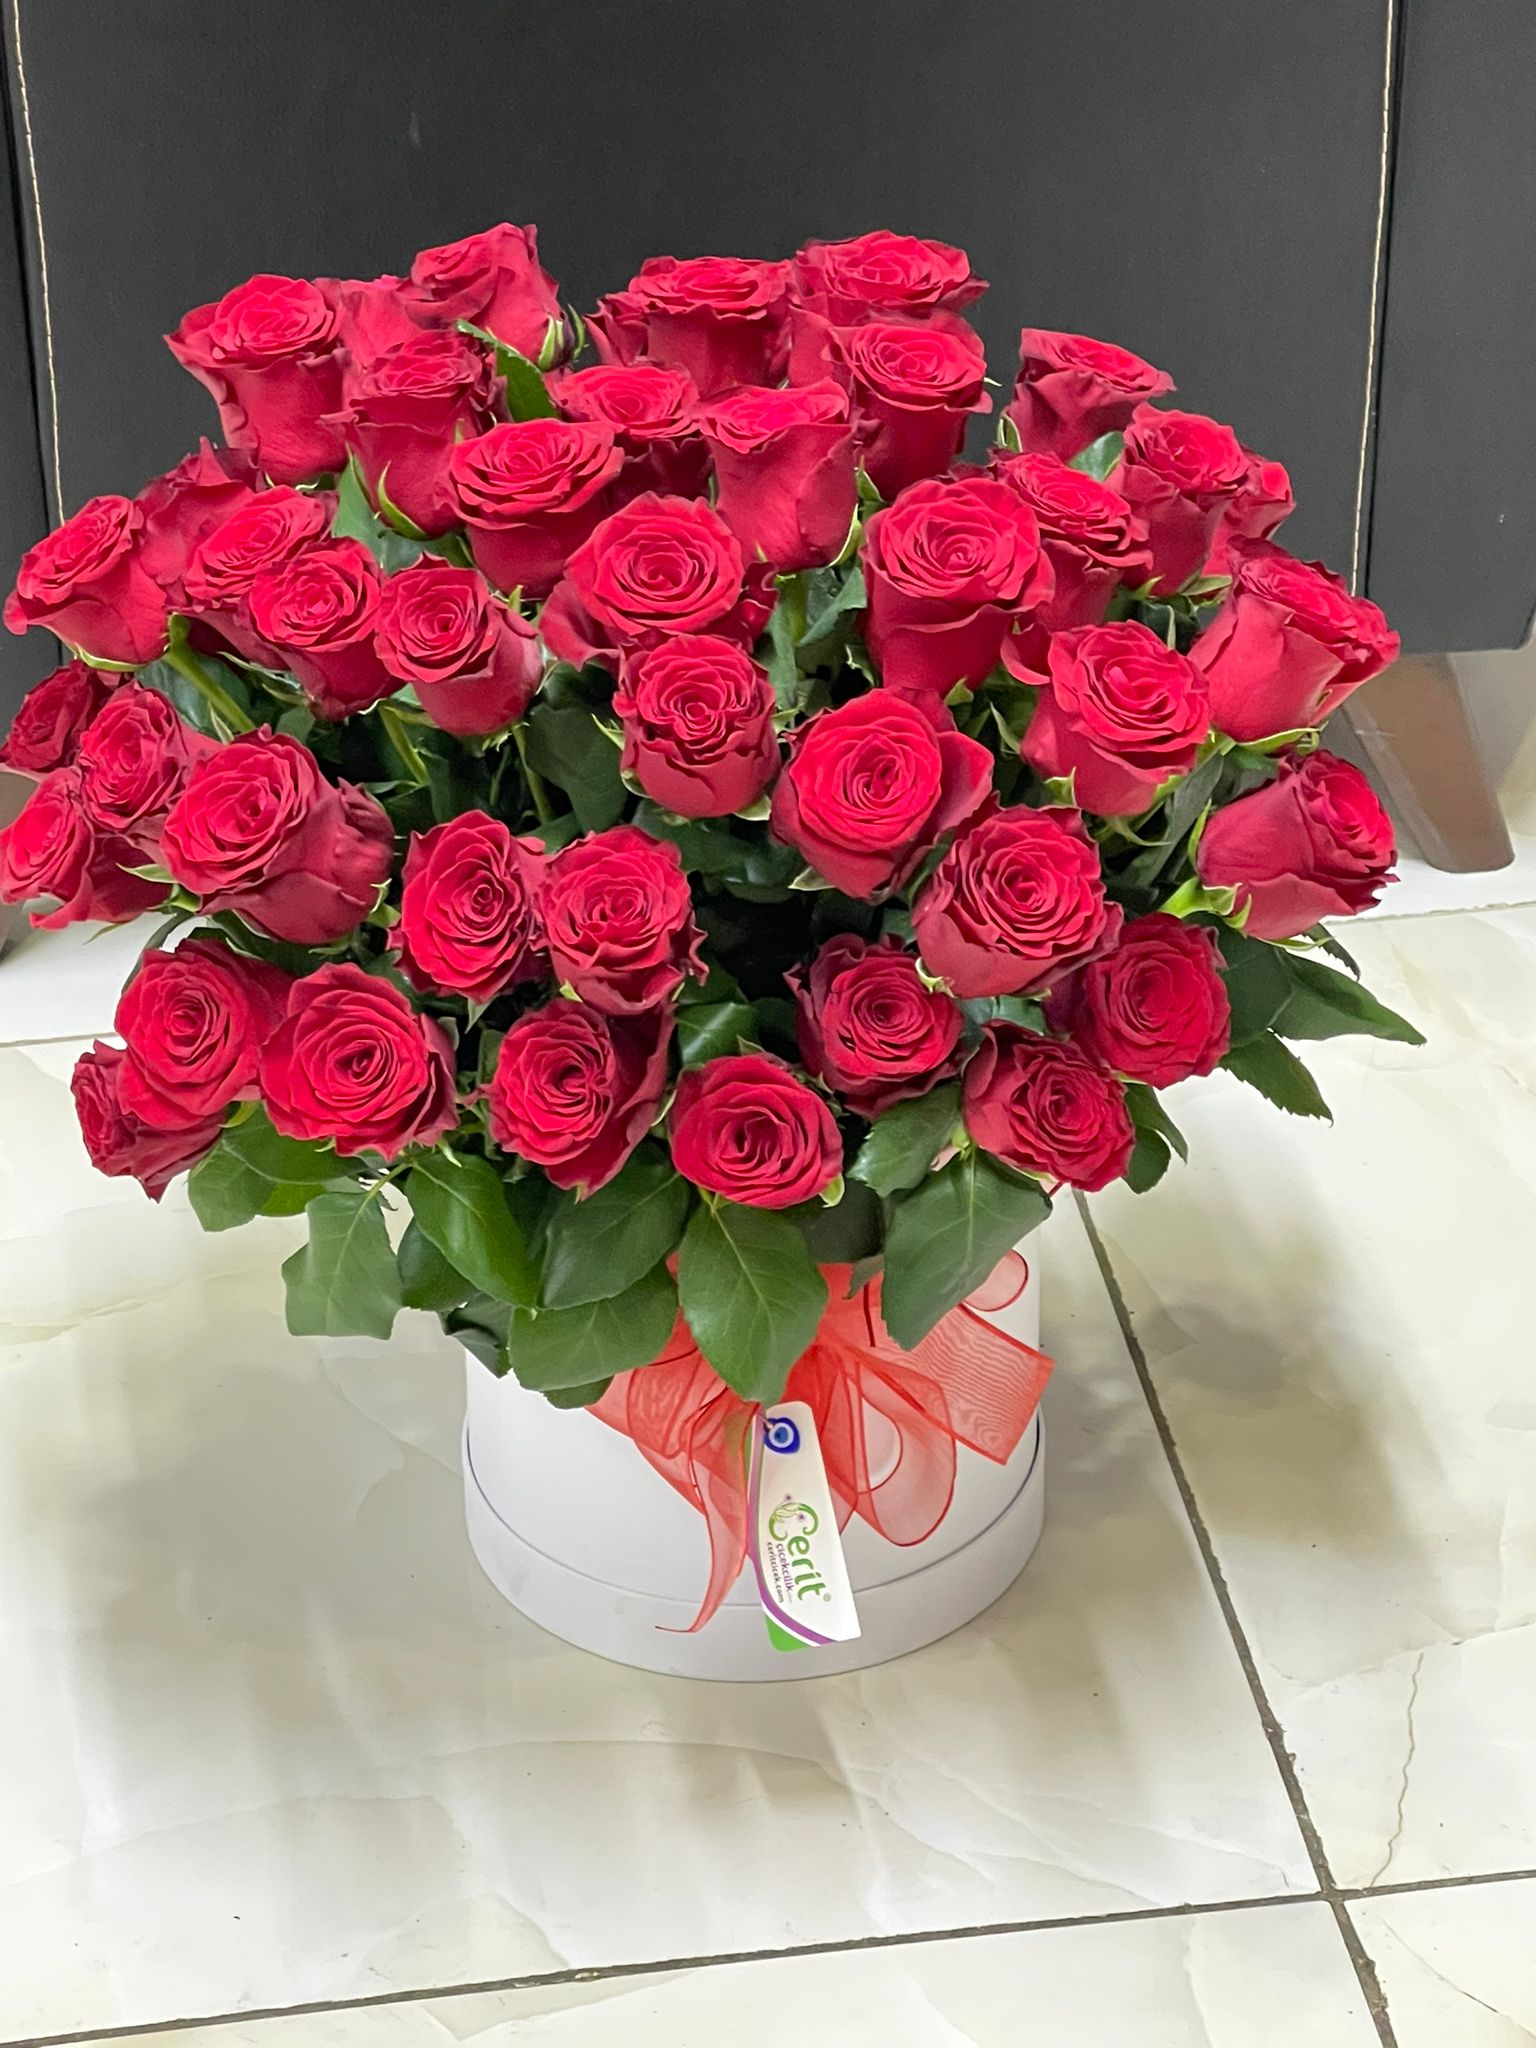  Доставка цветов в Анталия‎  51 шт красных роз в белой коробке